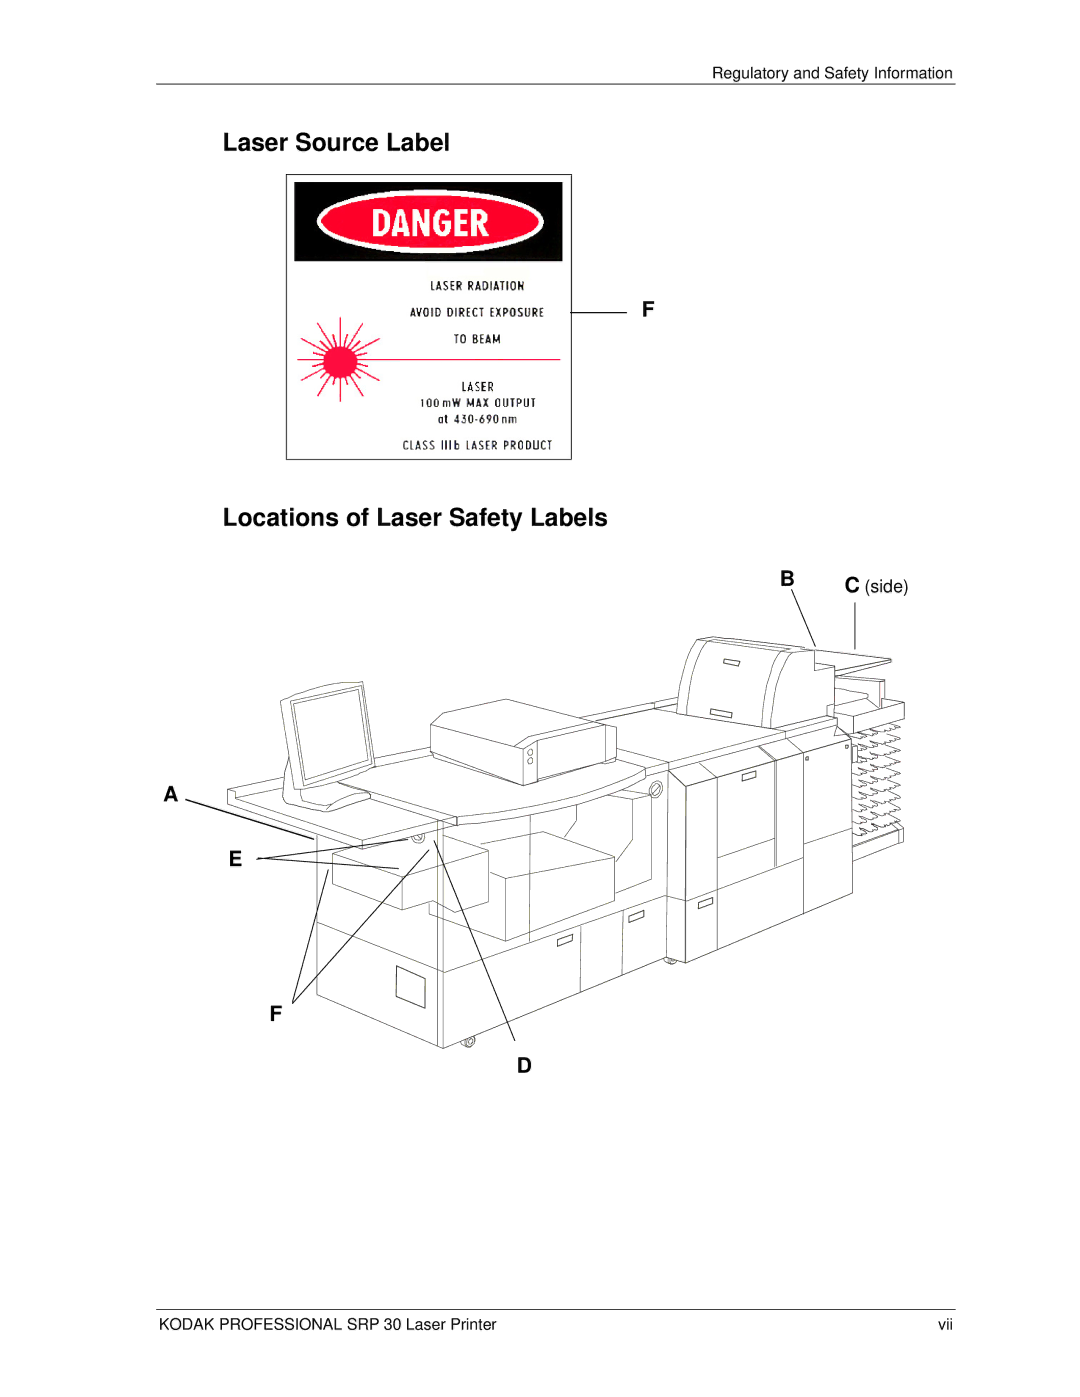 Kodak SRP 30 manual Laser Source Label Locations of Laser Safety Labels, Side 